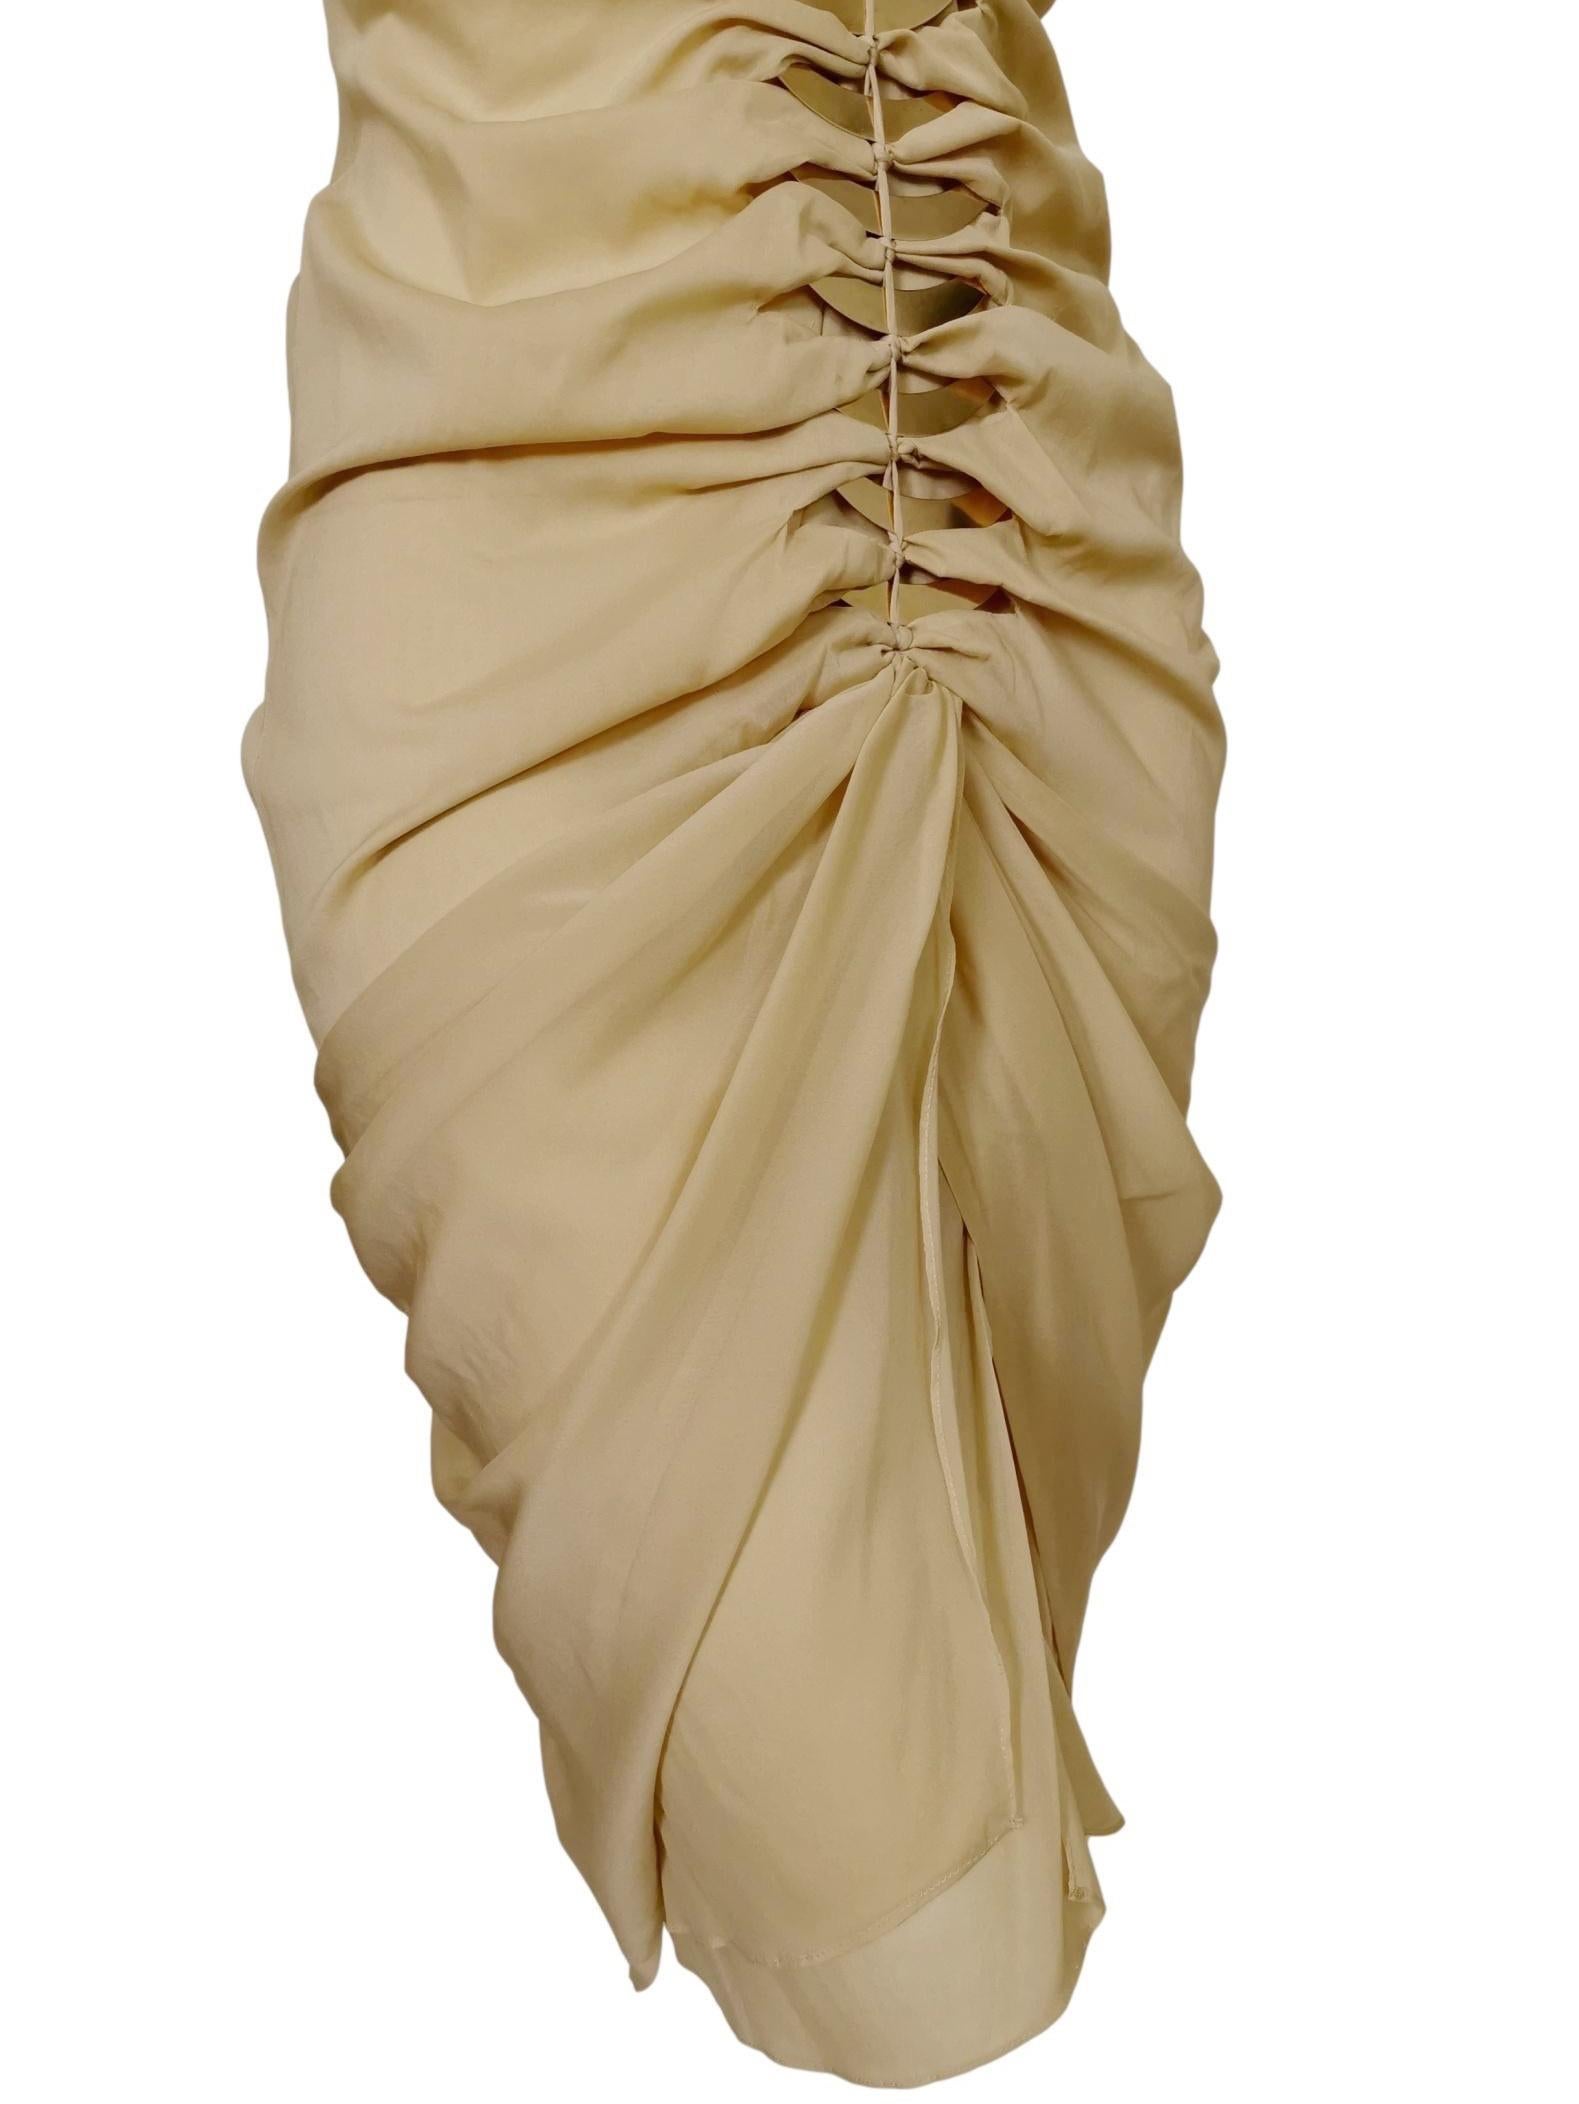 Gucci Tom Ford 2004 Draped Silk Dress 8